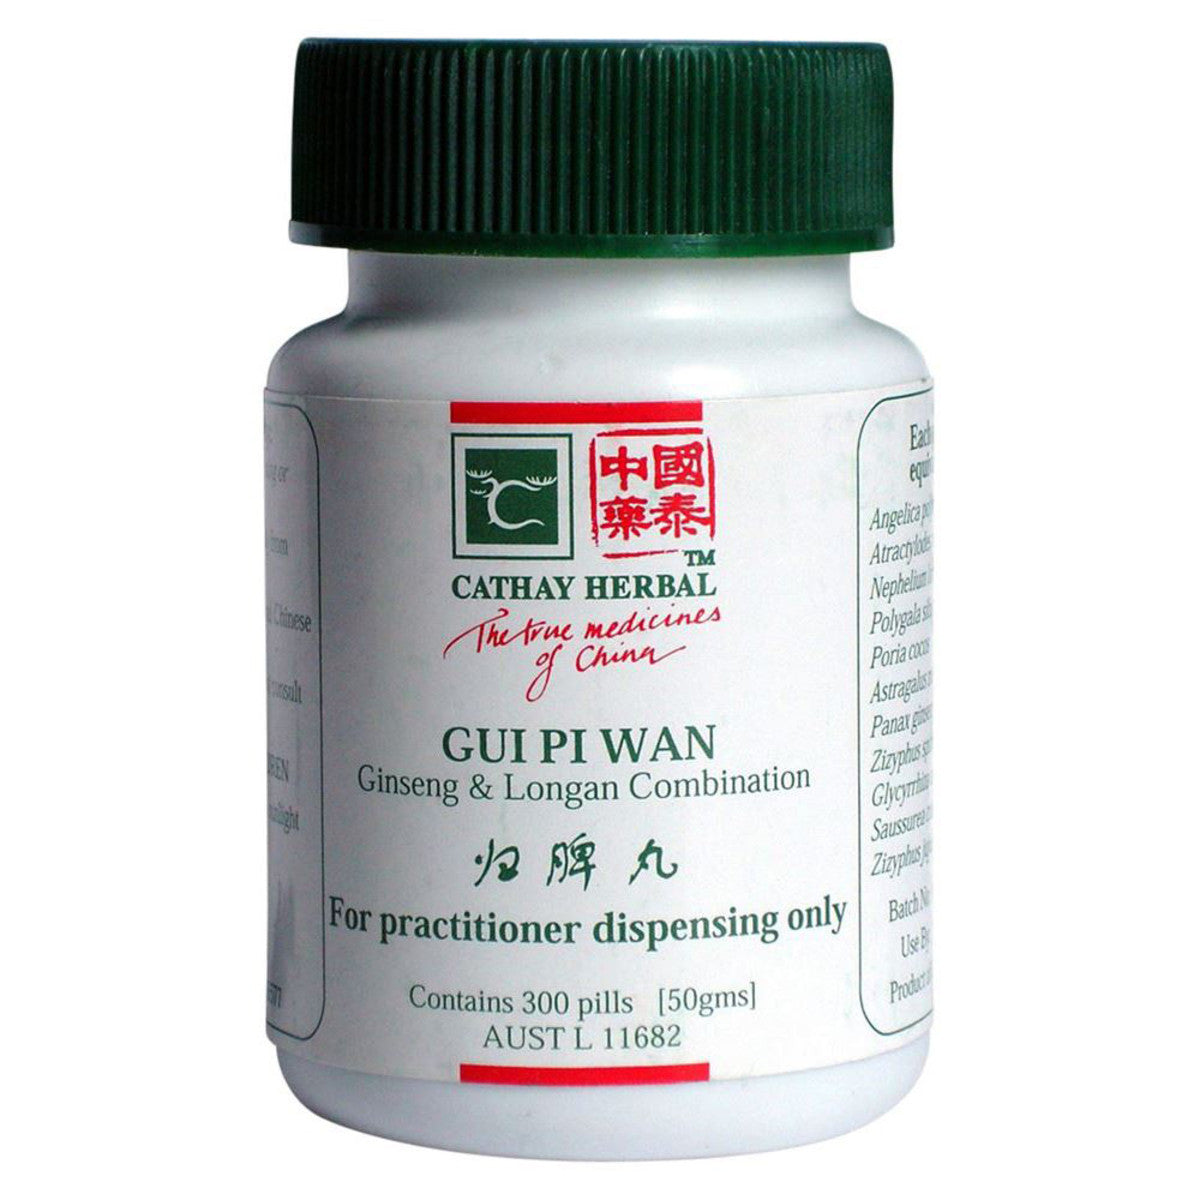 Cathay Herbal - Ginseng and Longan Combination pill